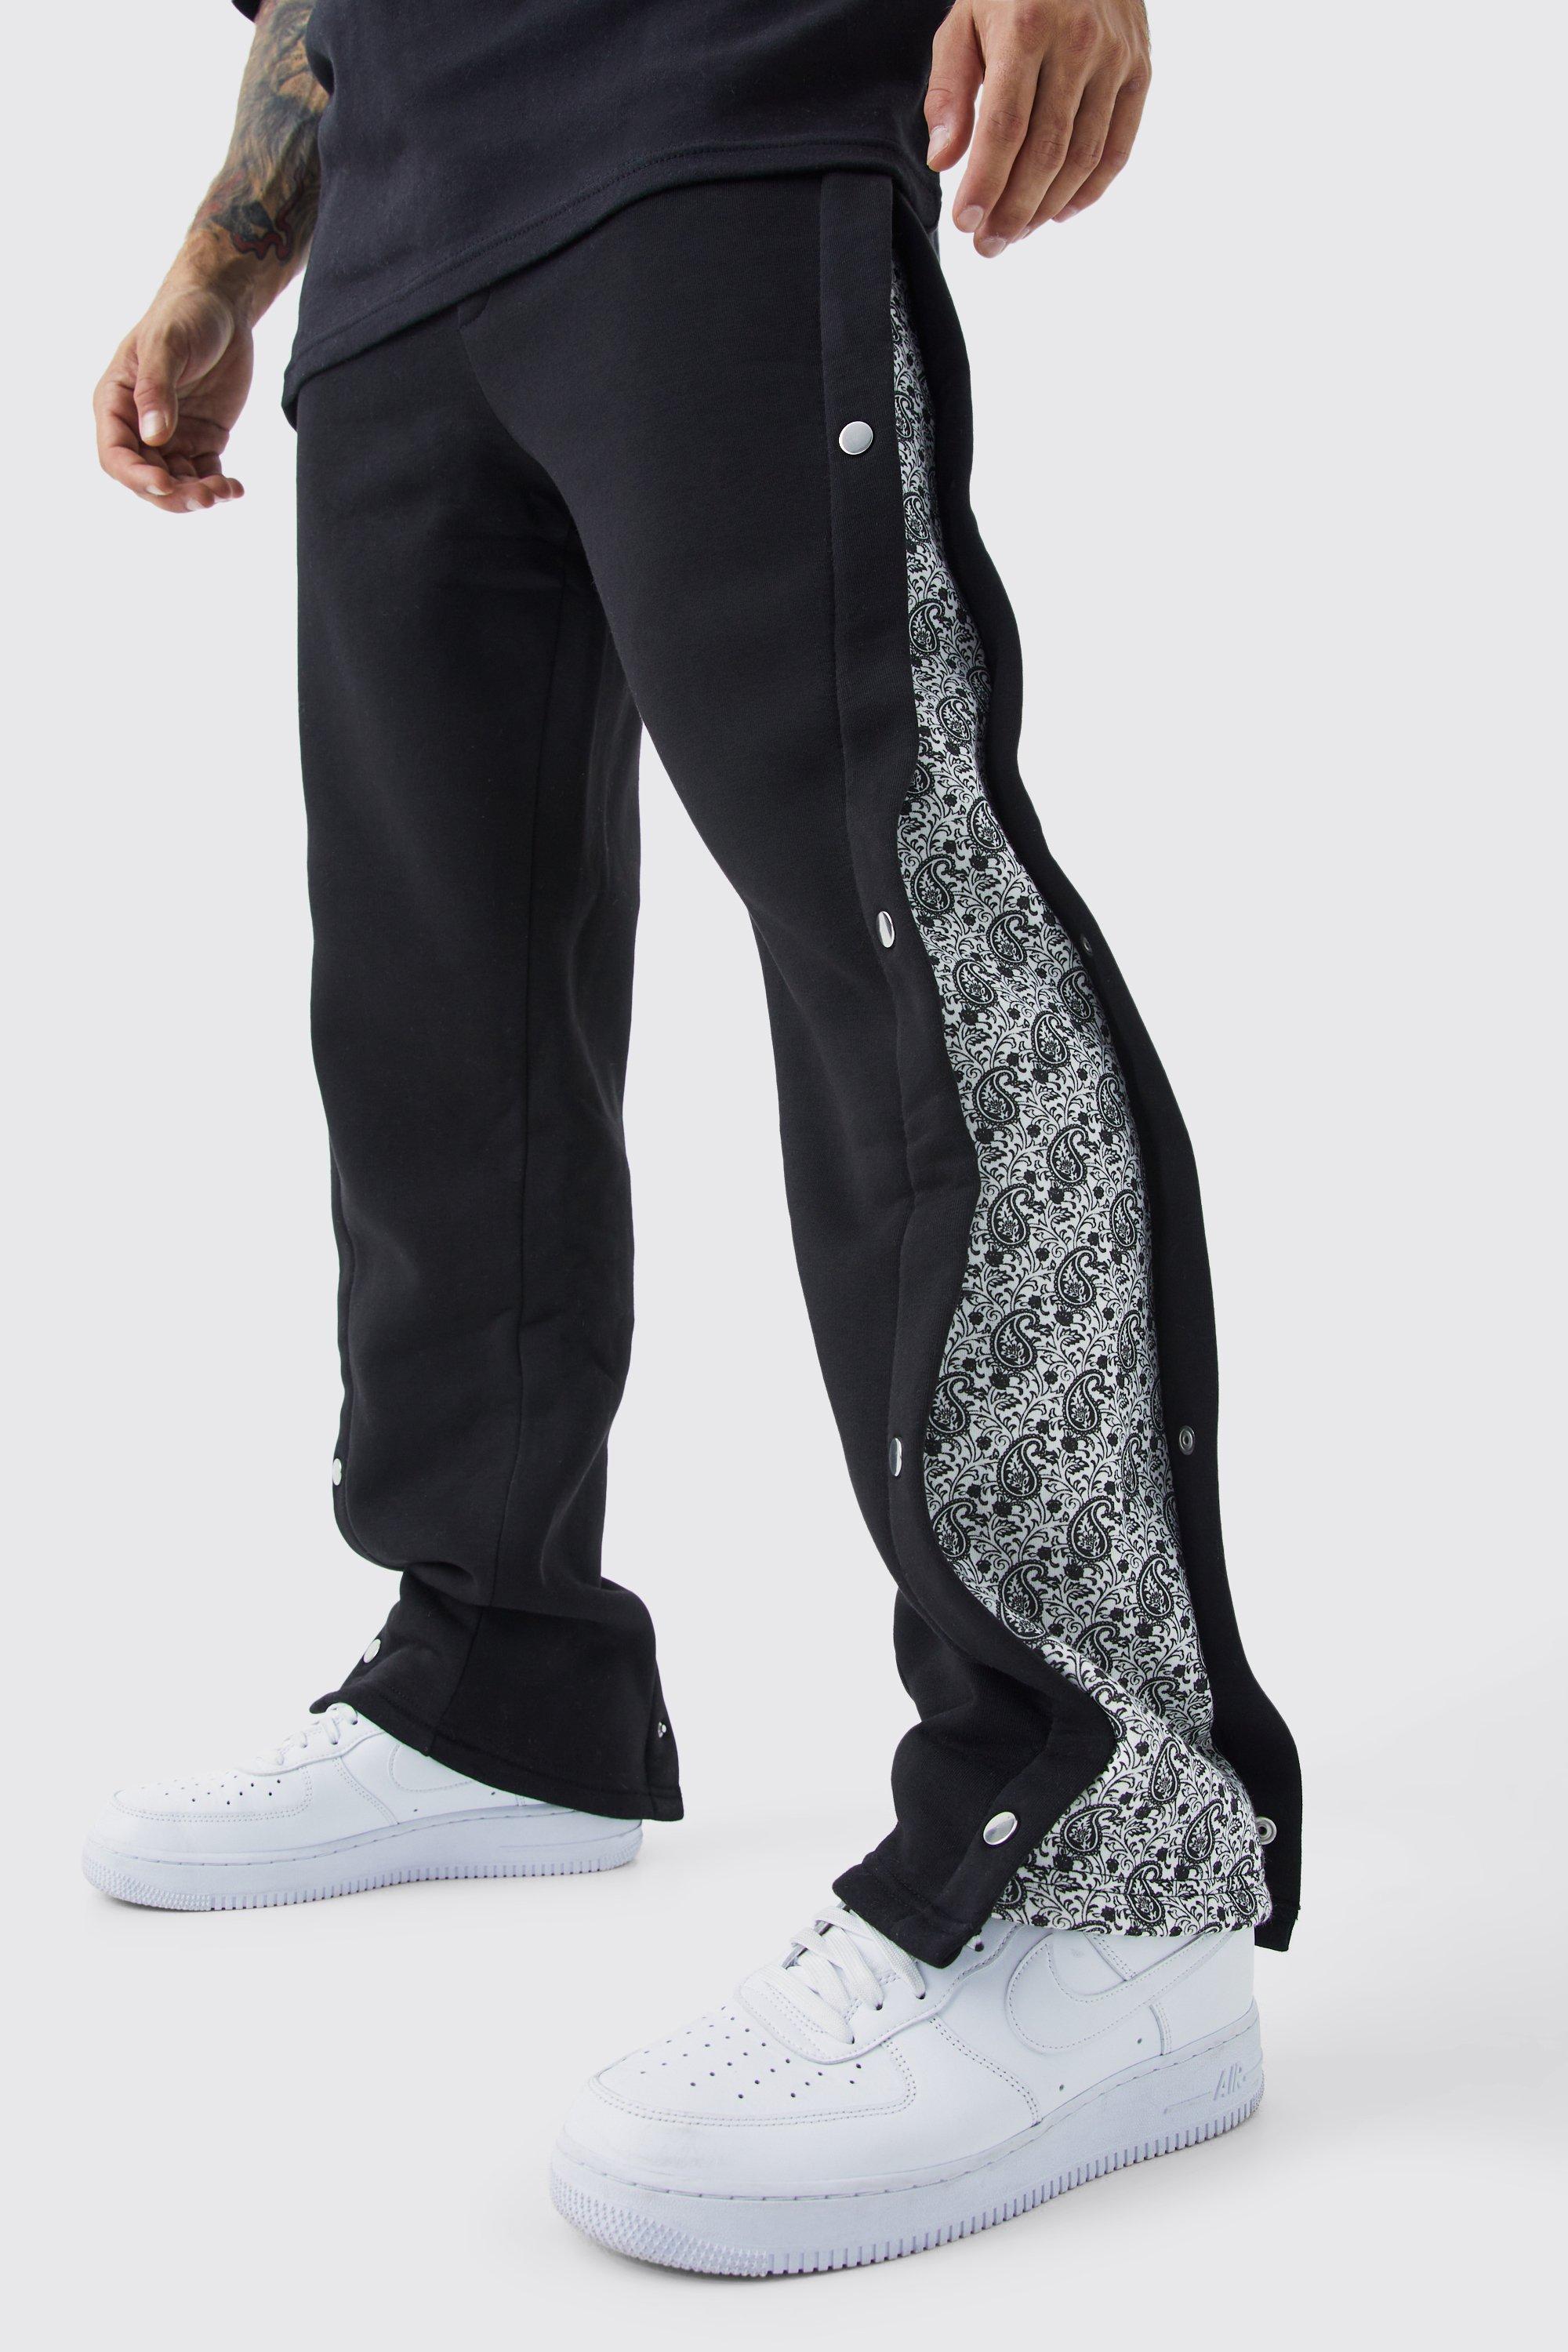 Image of Pantaloni tuta rilassati con stampa, pannelli laterali e bottoni a pressione, Nero